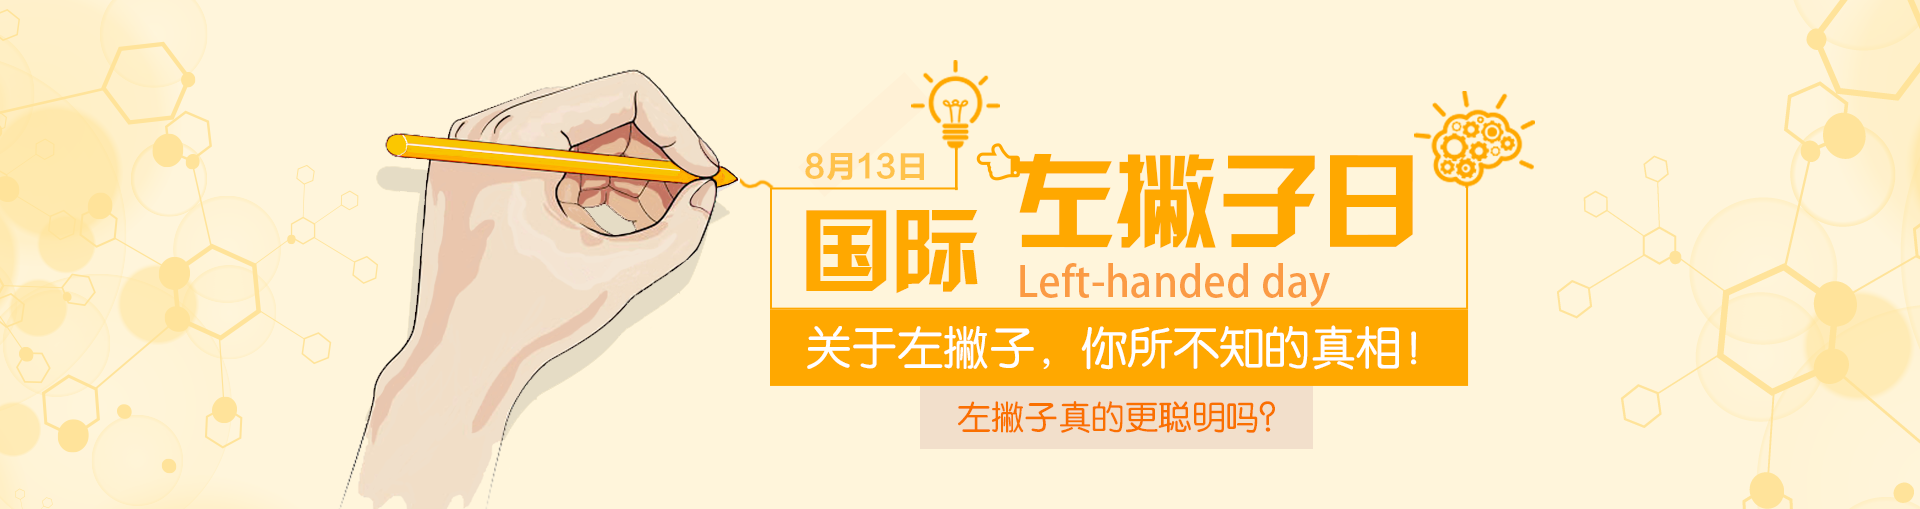 国际左撇子日是哪一天 左撇子真的更聪明吗 国际左撇子